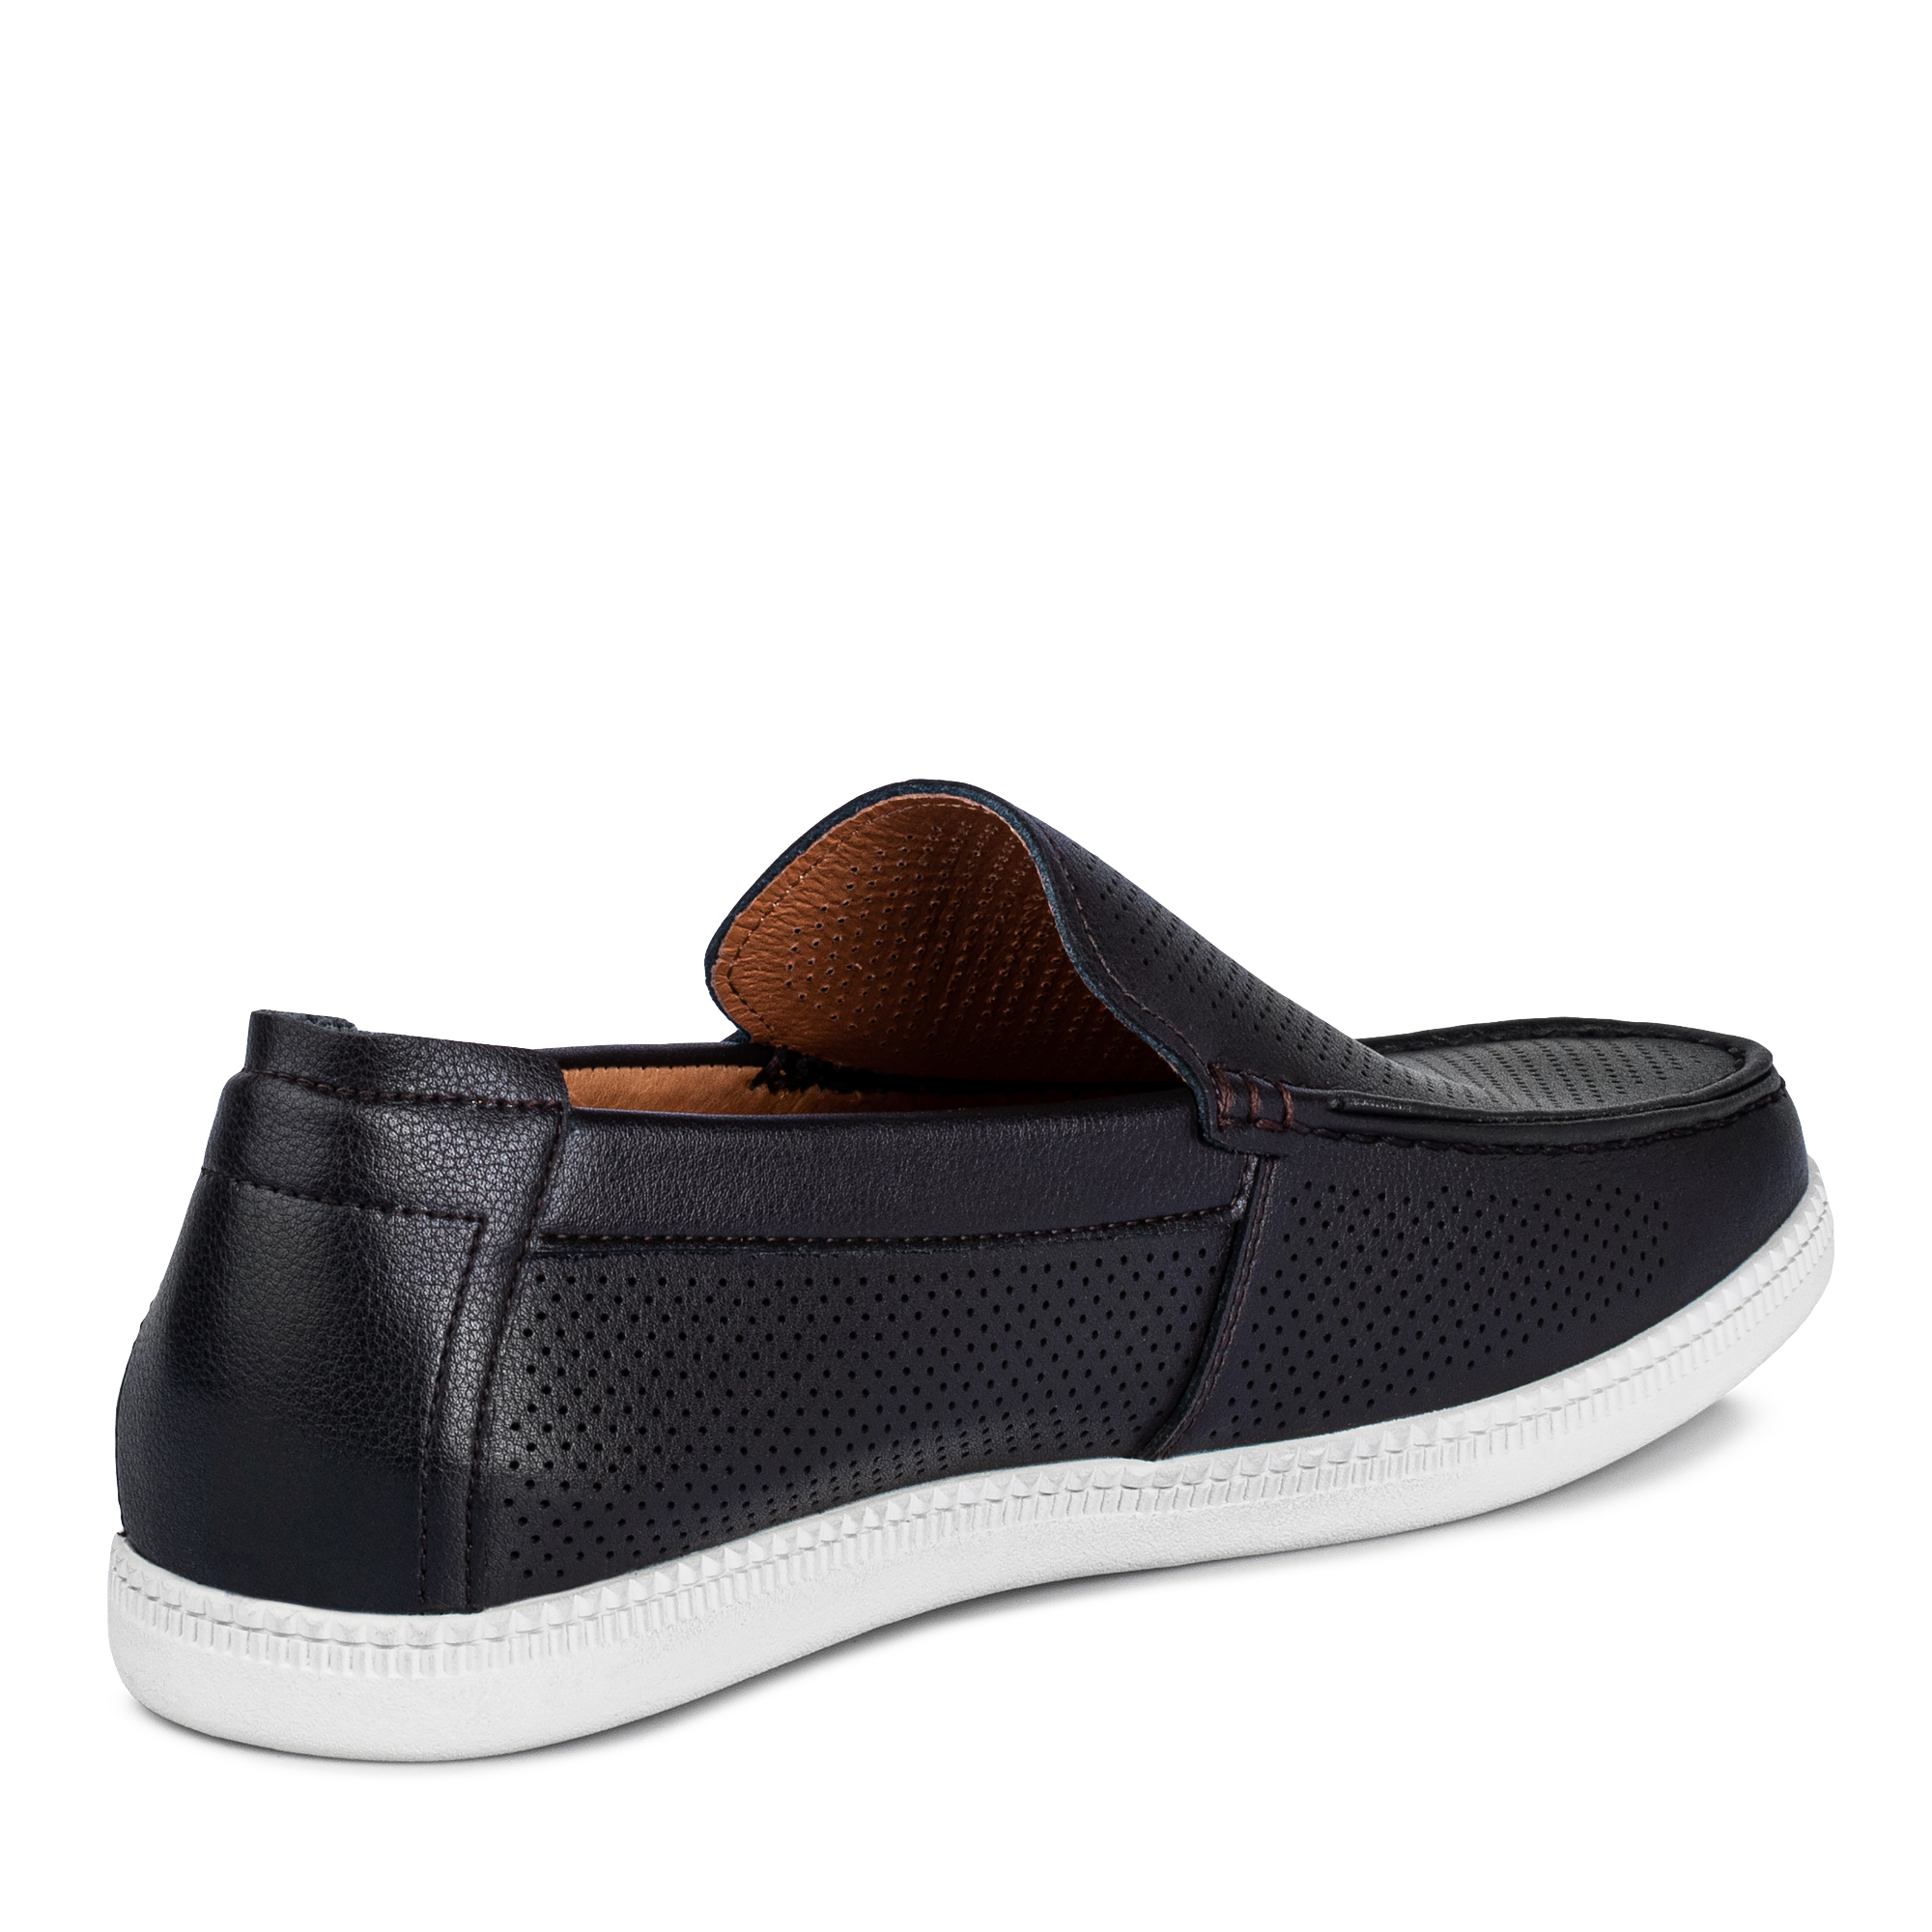 Туфли/полуботинки Thomas Munz 058-833B-1609, цвет темно-коричневый, размер 42 - фото 3